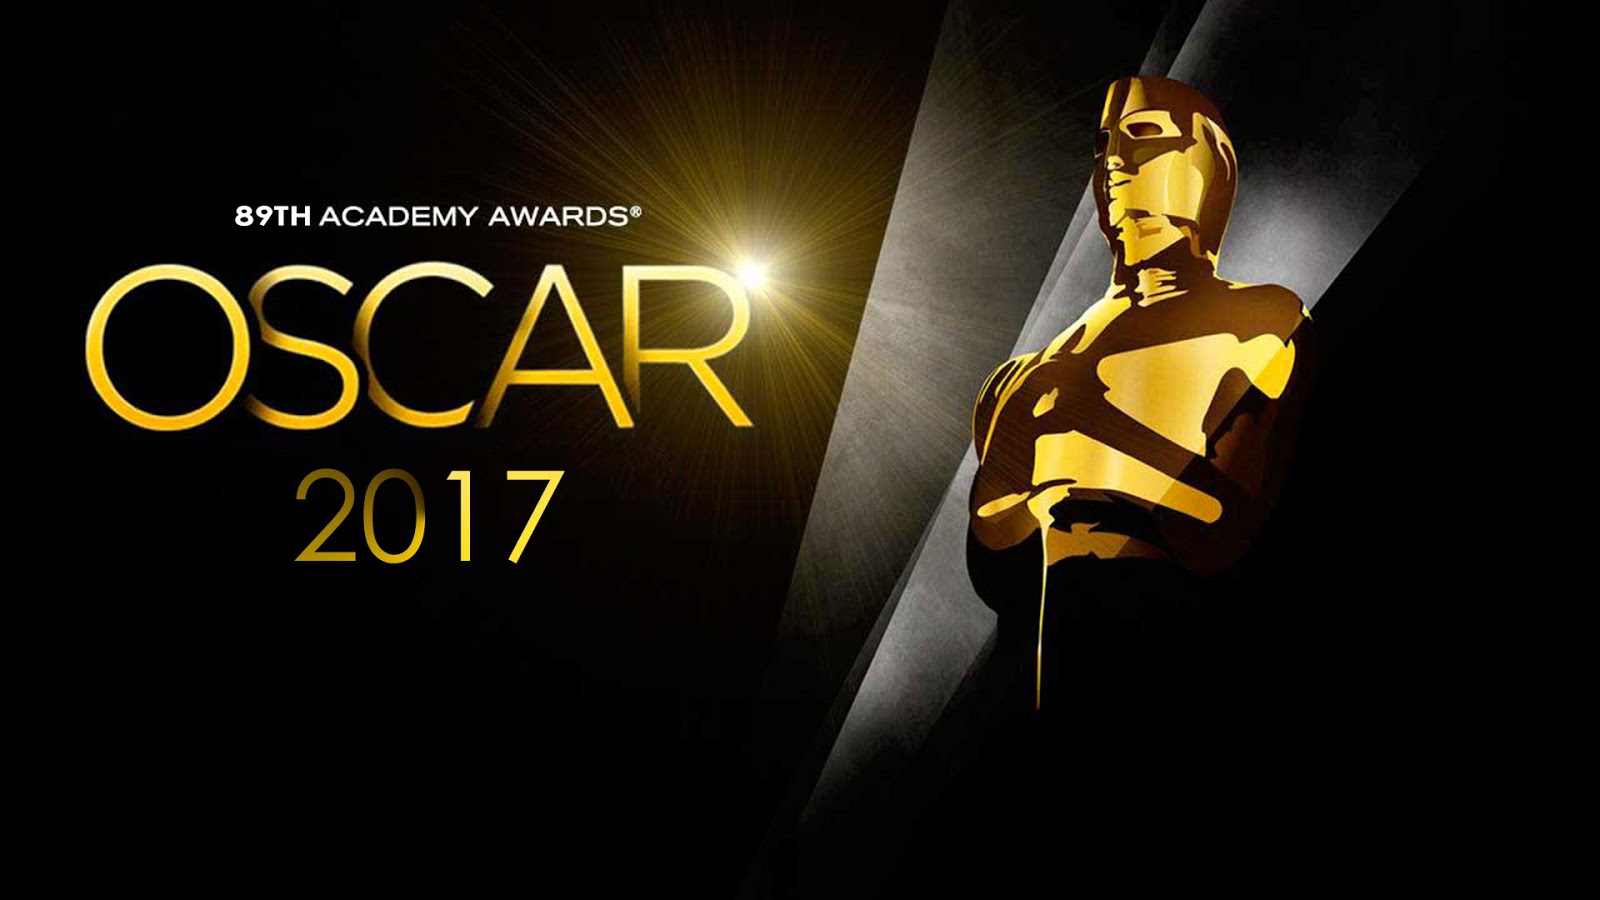 89th Academy Awards 2017